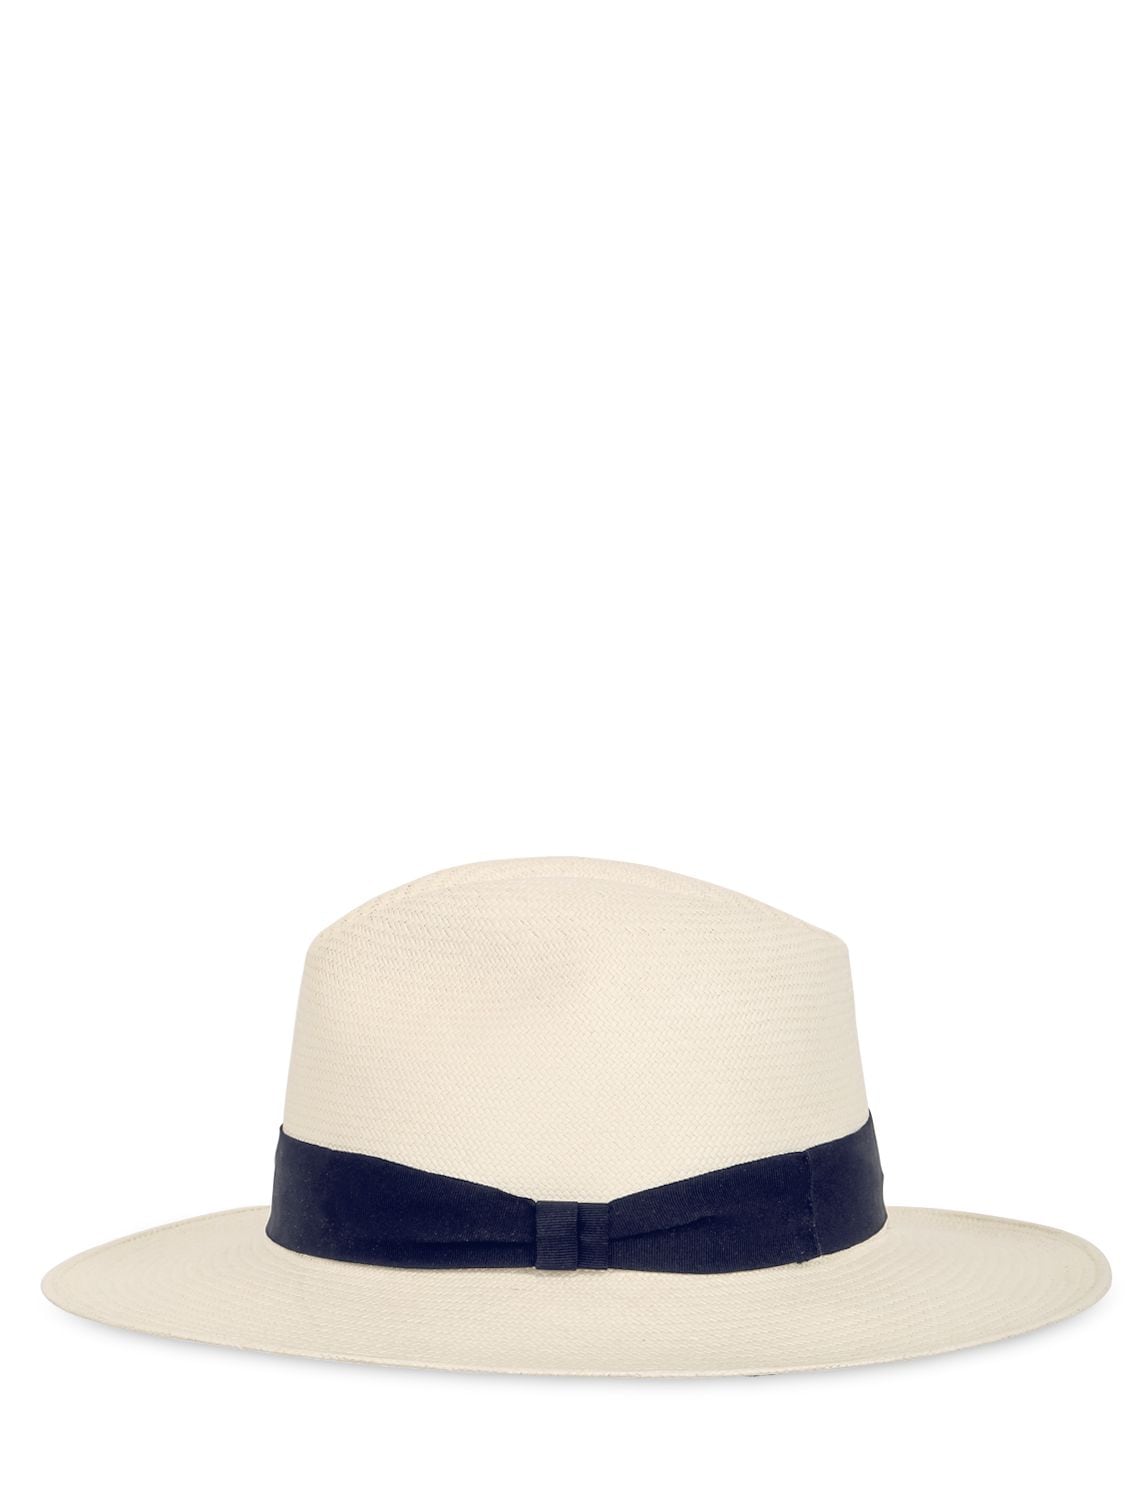 Shop Frescobol Carioca Ecuadorian Panama Straw Hat In White,navy